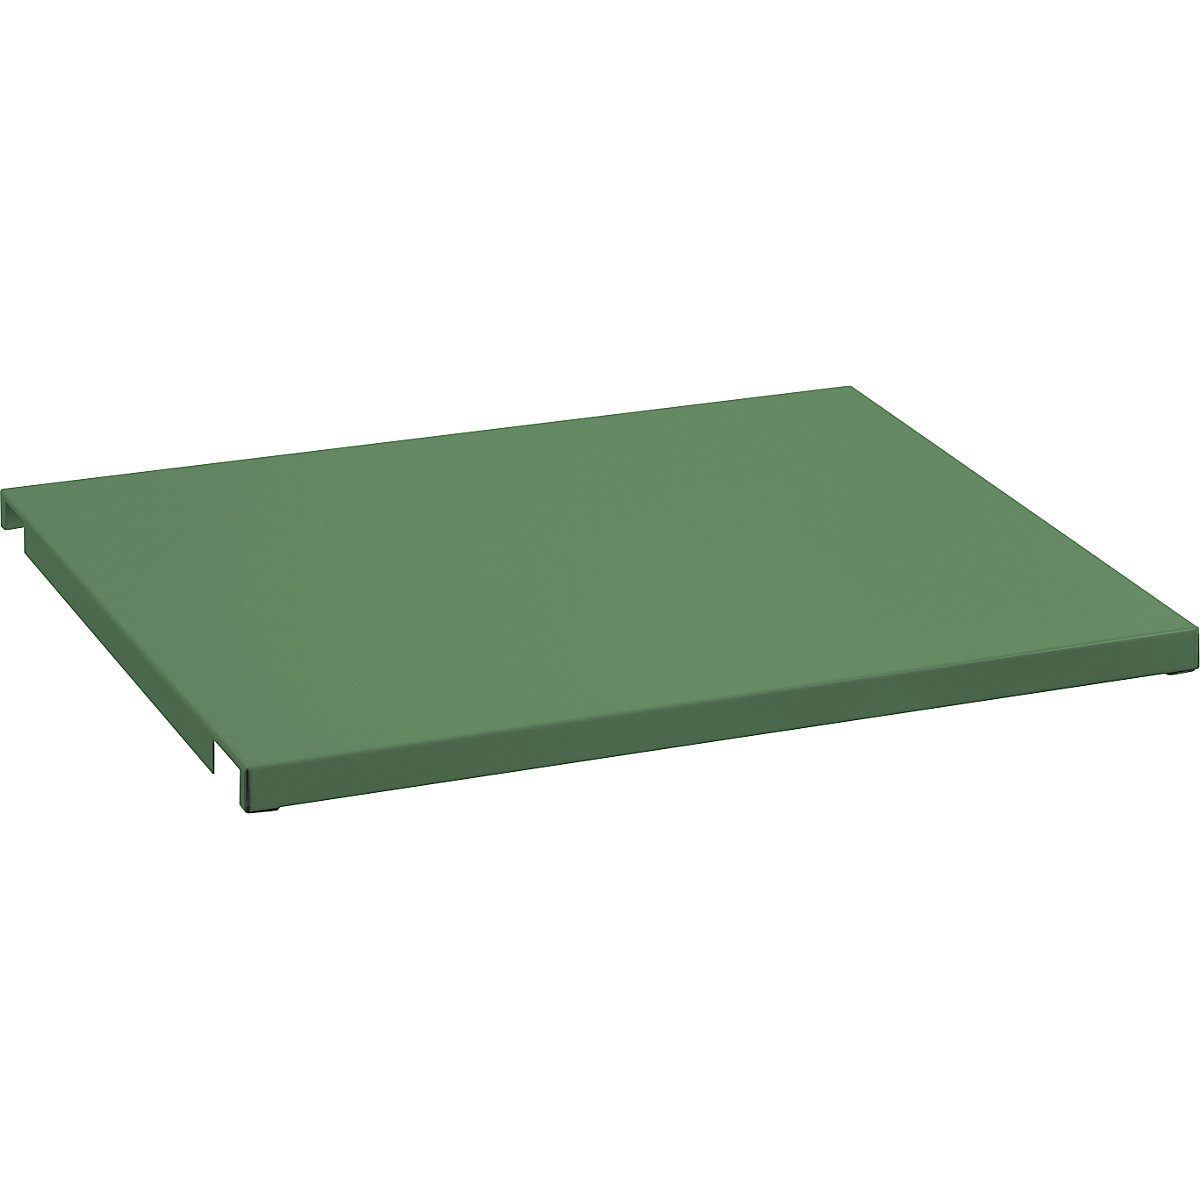 Recouvrement en tôle pour cadre de tablette – LISTA, pour l x p 1290 x 1260 mm, vert réséda-2